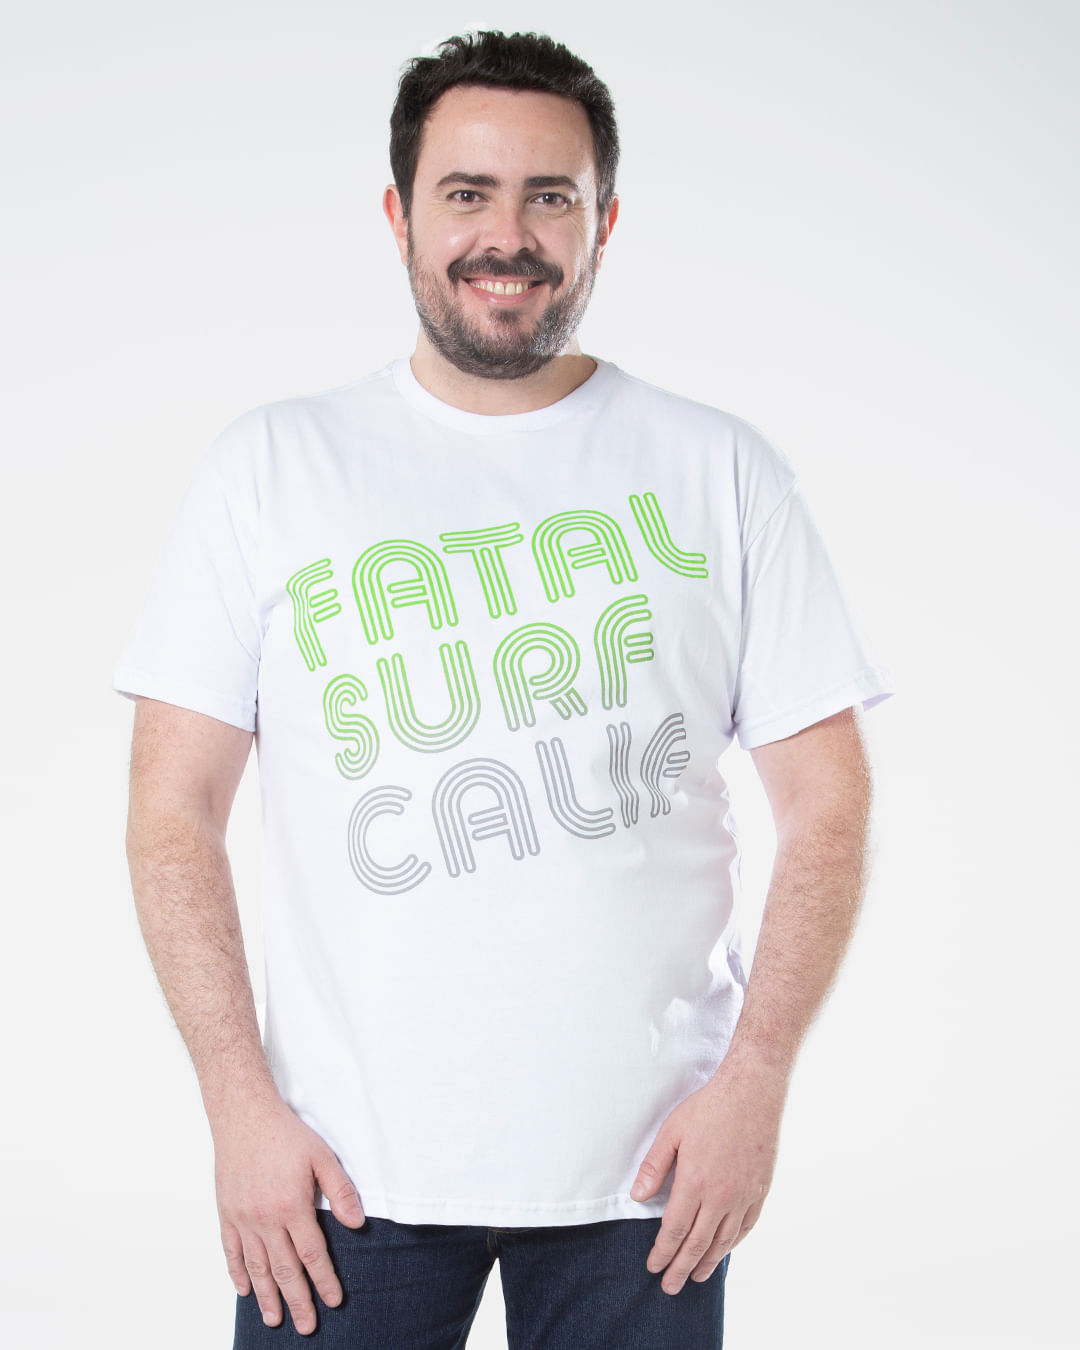 Camiseta-Masculina-Plus-Size-Estampada-Surf-Calif-Fatal-Branca